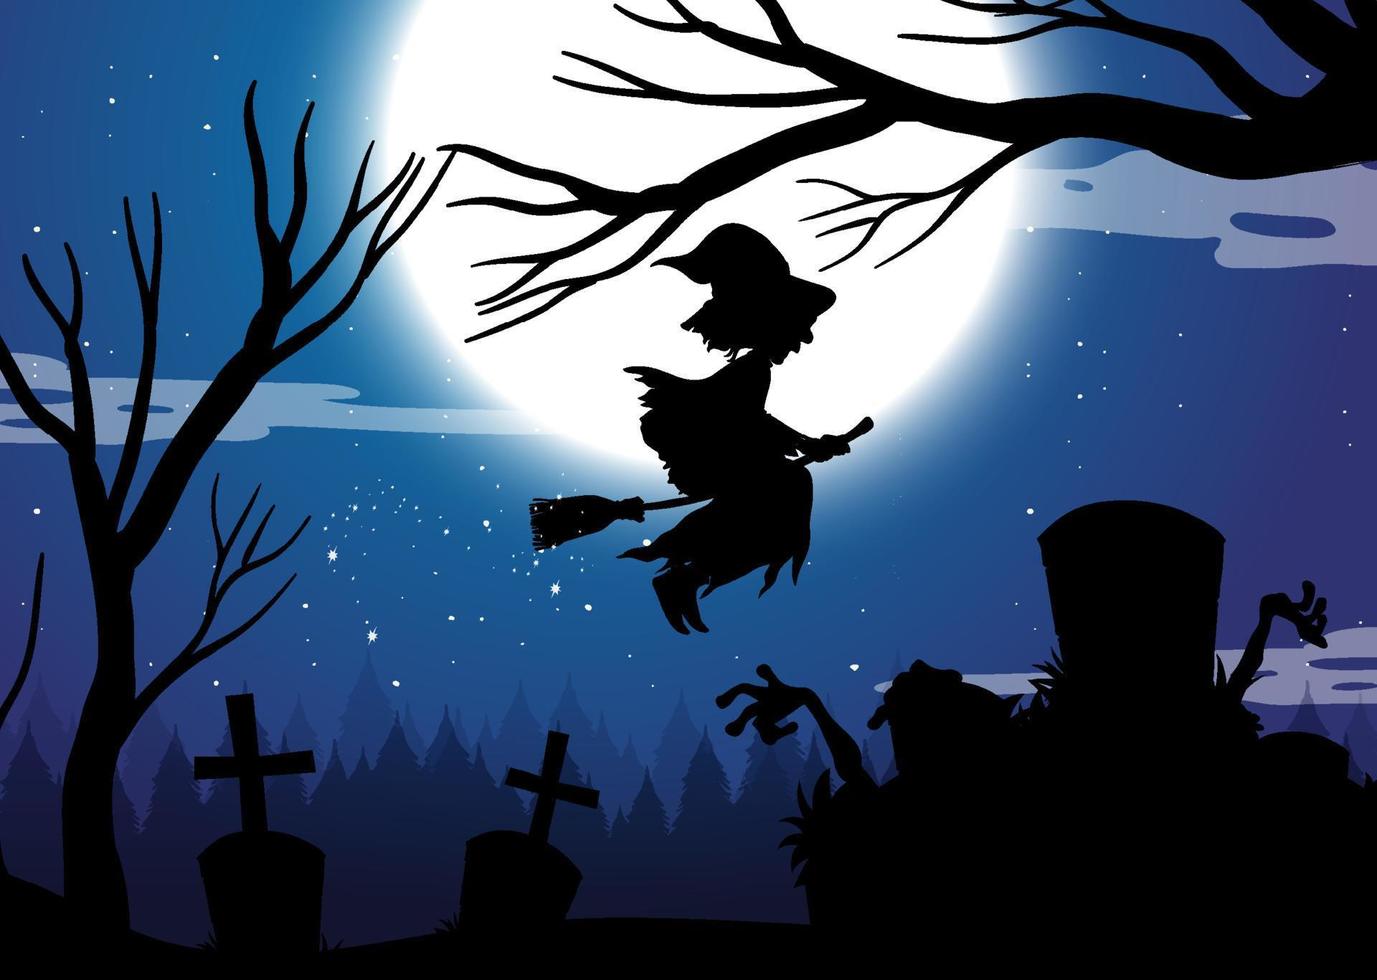 fond de nuit d'halloween avec la silhouette de la sorcière vecteur